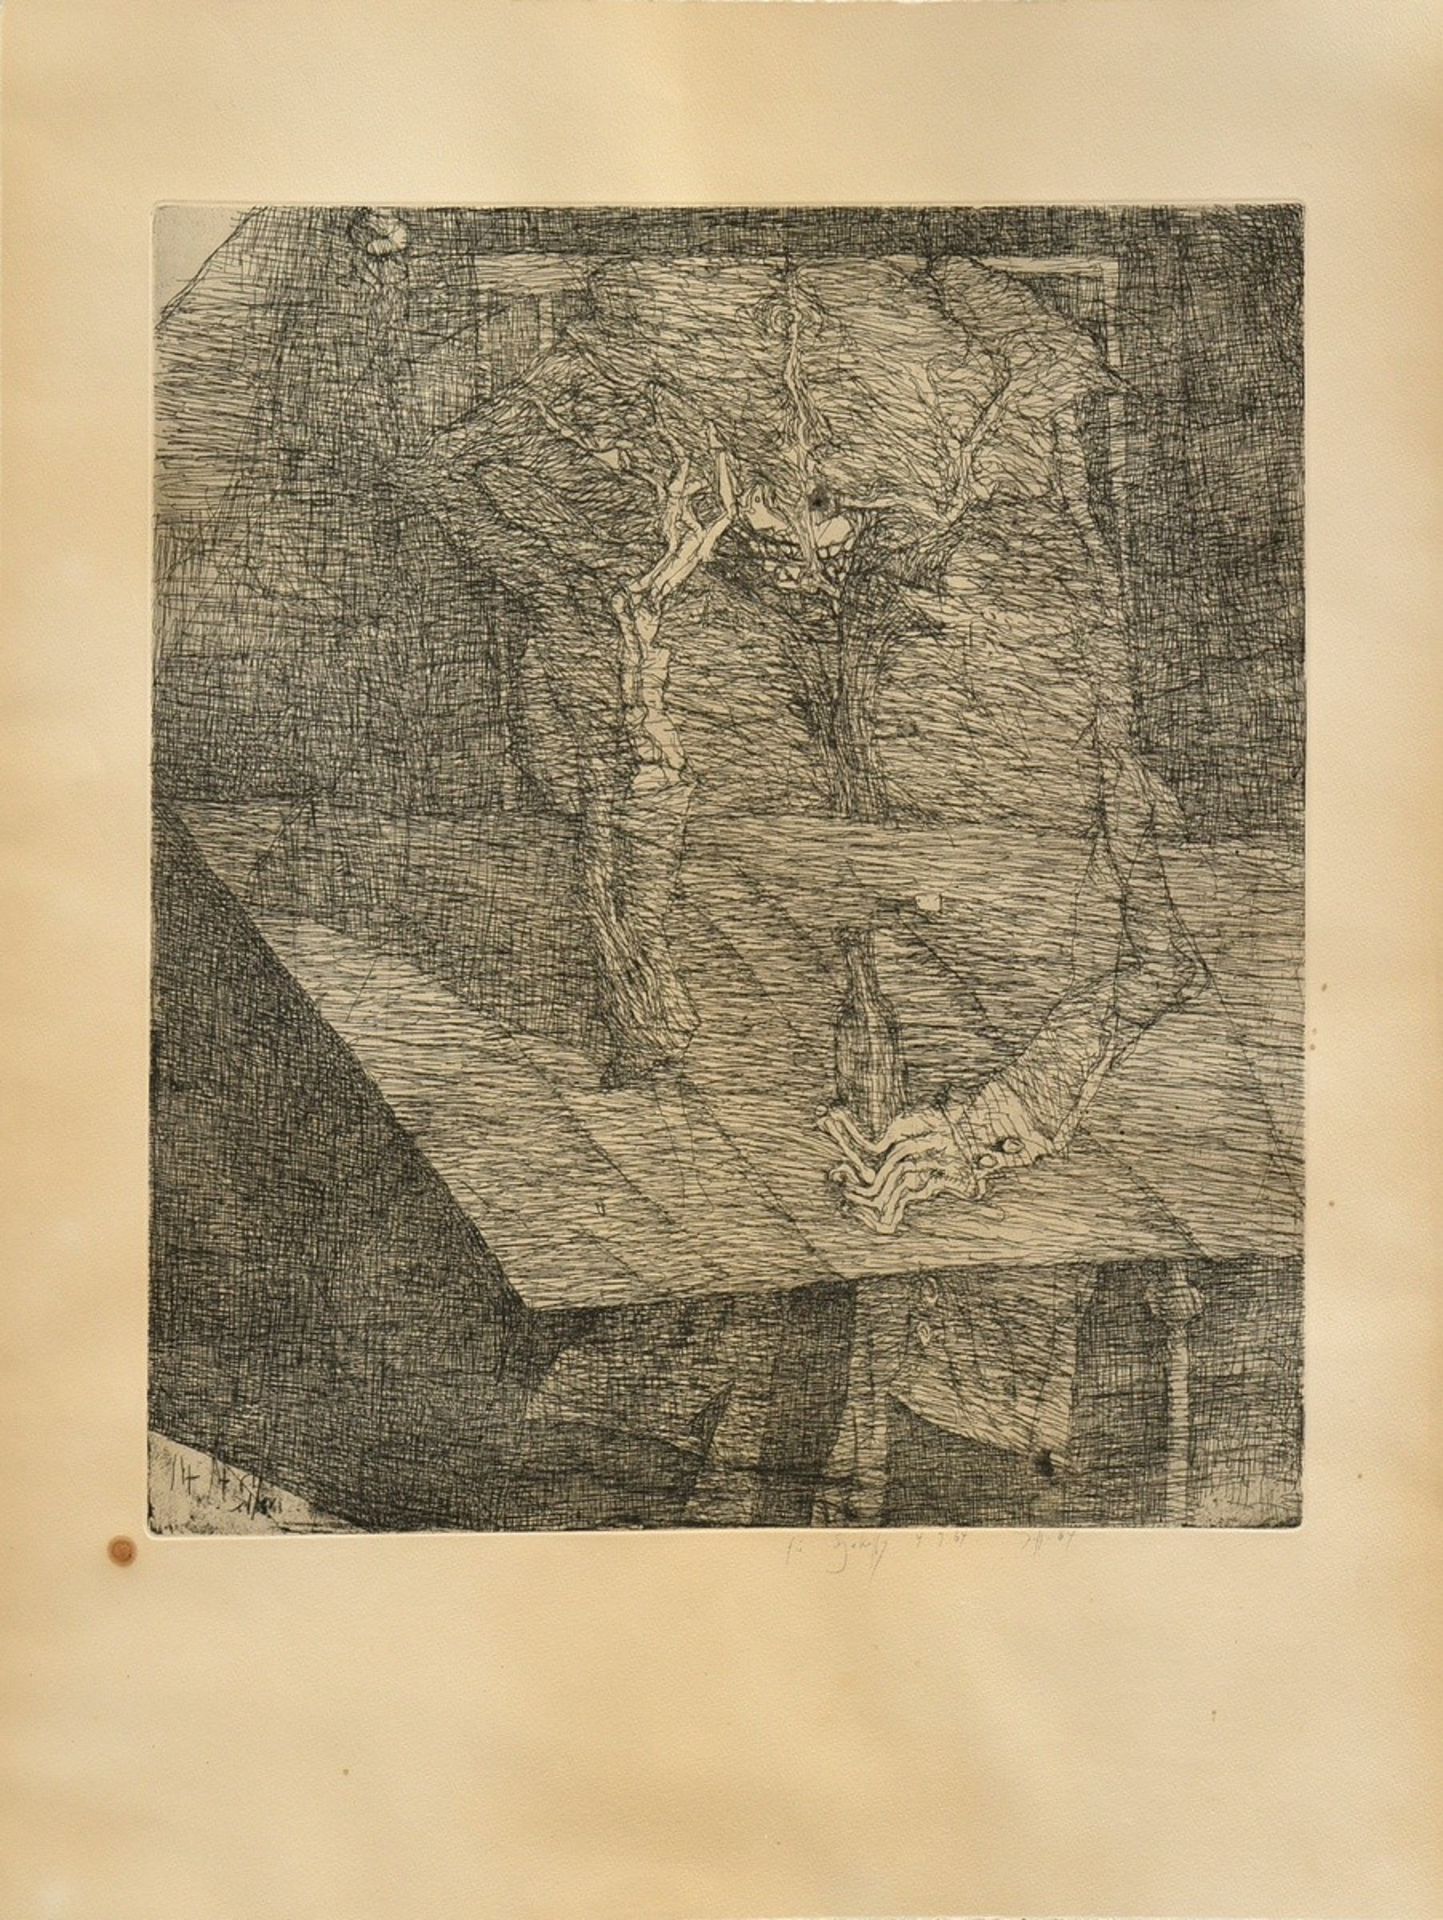 Janssen, Horst (1929-1995) "Absinth" 1964, etching, edition of 40, signed/dated/dedicated "für Szek